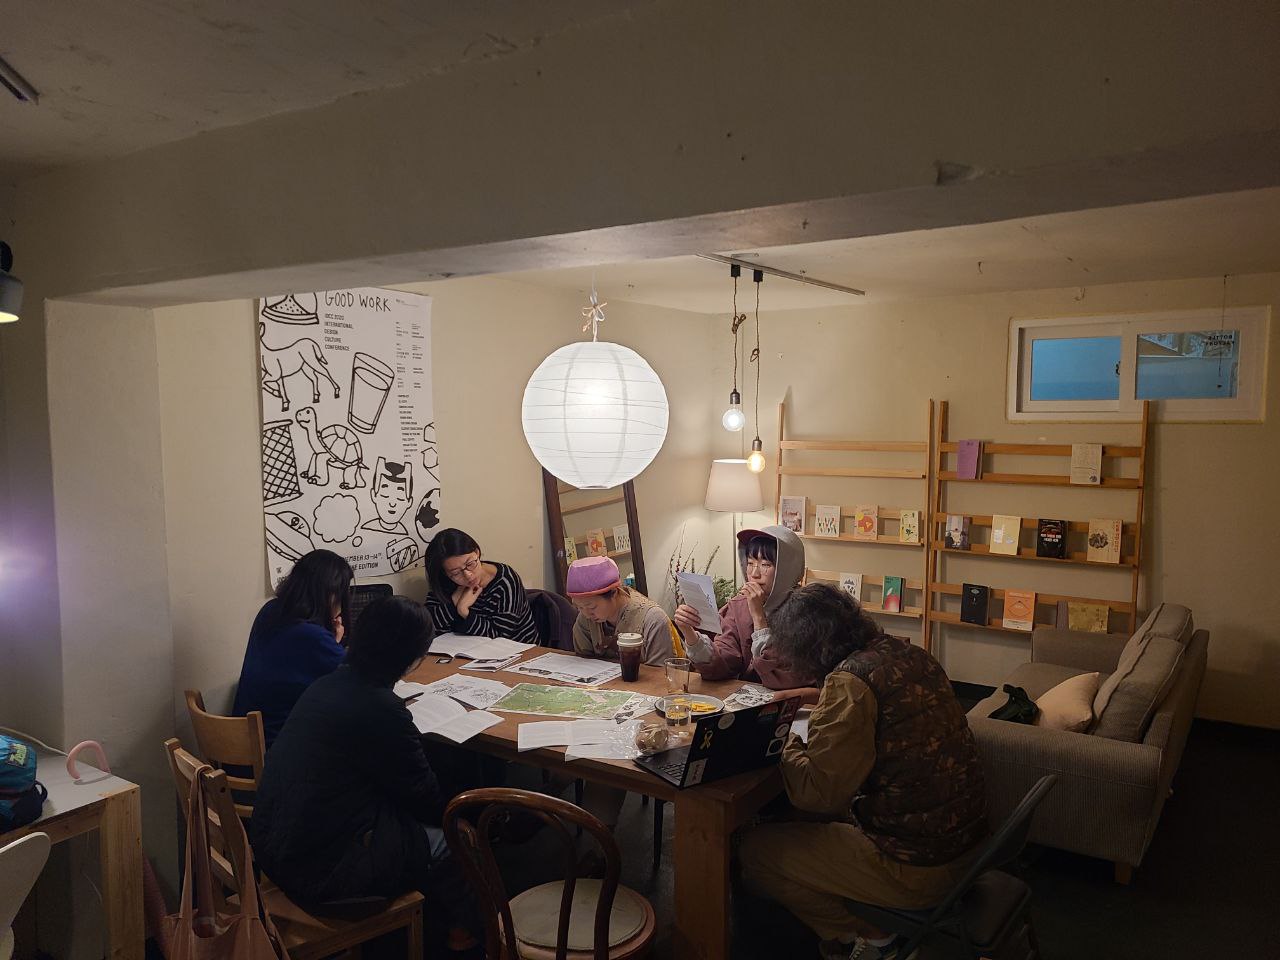  책장과 소파가 있는 실내에 6명의 사람들이 테이블에 둘러앉아 소책자를 보고 있다. 테이블 위에는 지도와 자료들이 놓여있다. 